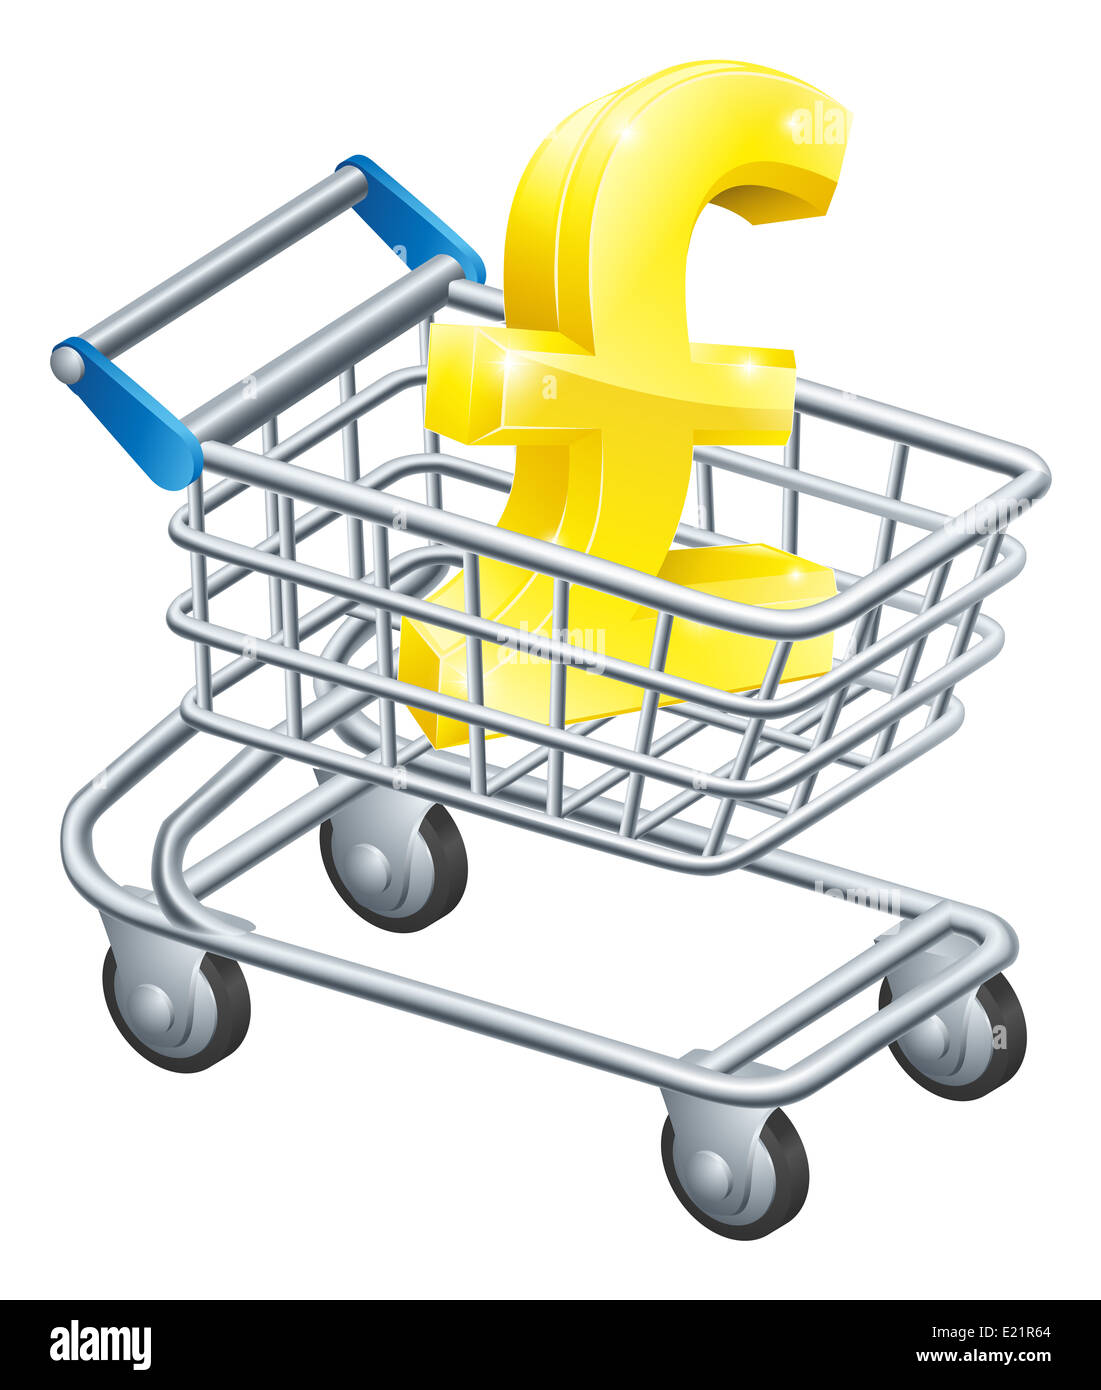 Concept de chariot devise Pound Pound sign dans un panier ou le chariot de supermarché Banque D'Images